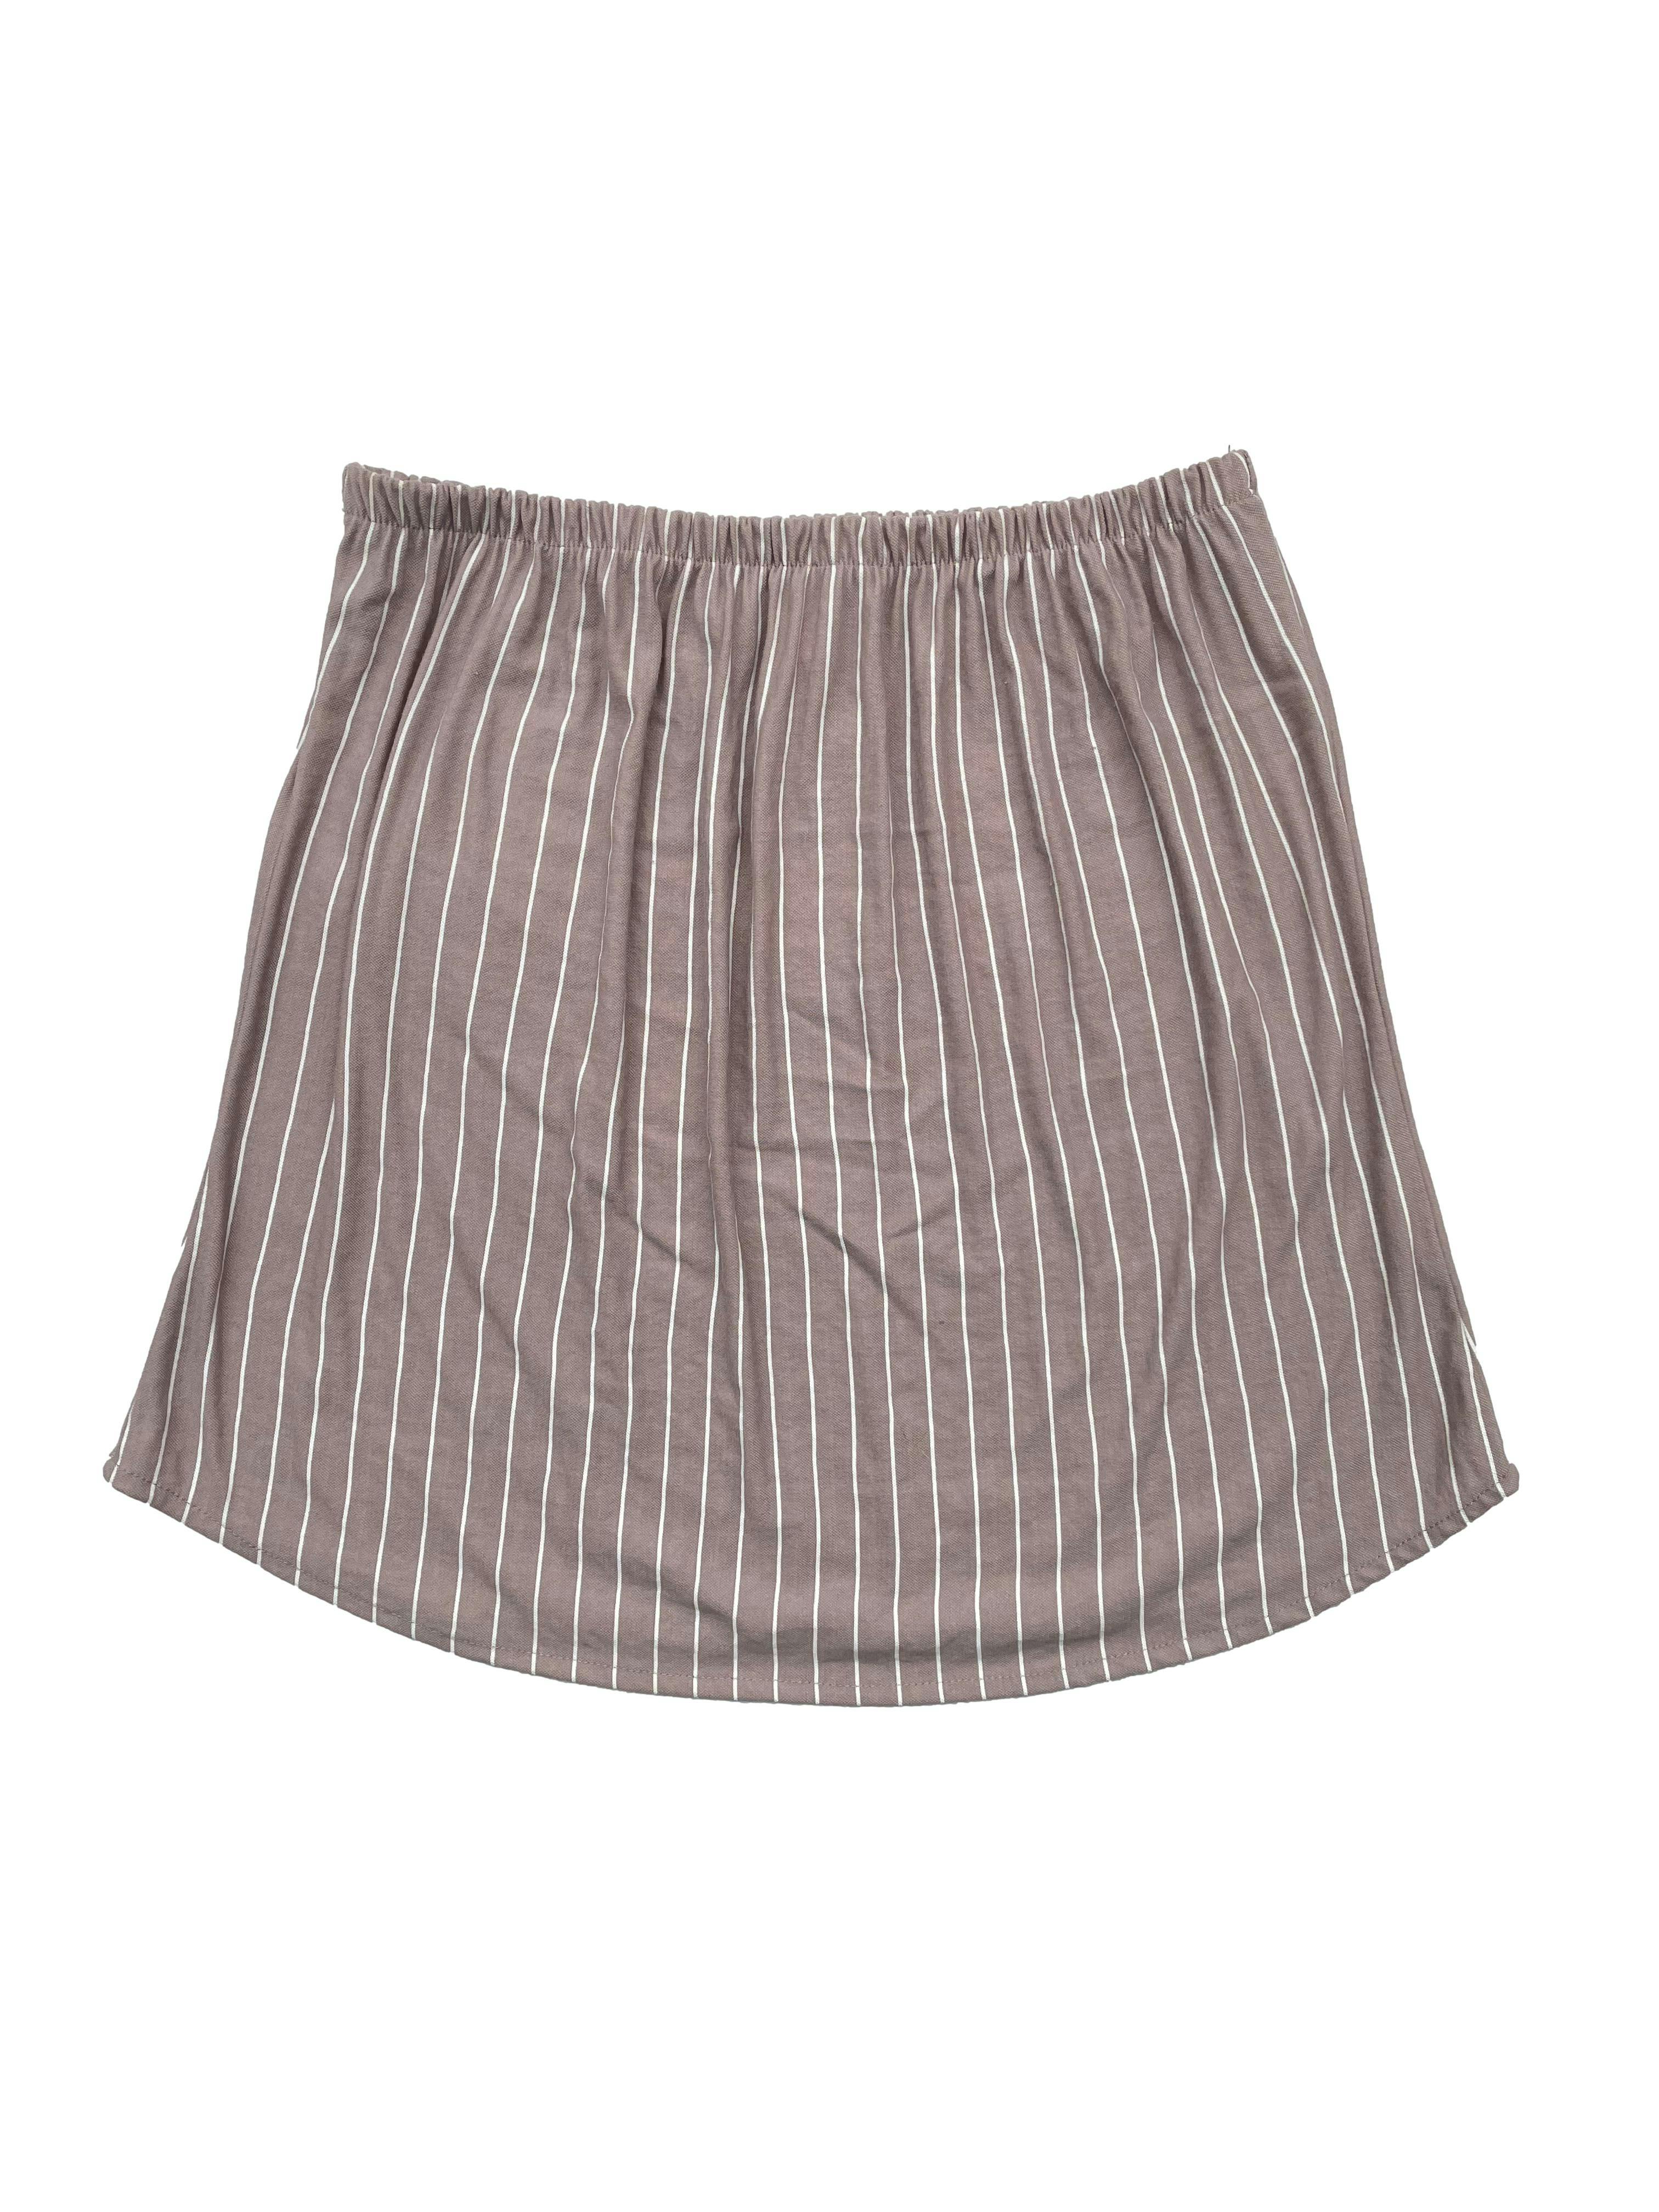 Falda Dunkelvolk color arena con rayas crema, tela fresca y ligera, cintura elasticada. Cintura 60cm sin estirar, Largo 35cm.